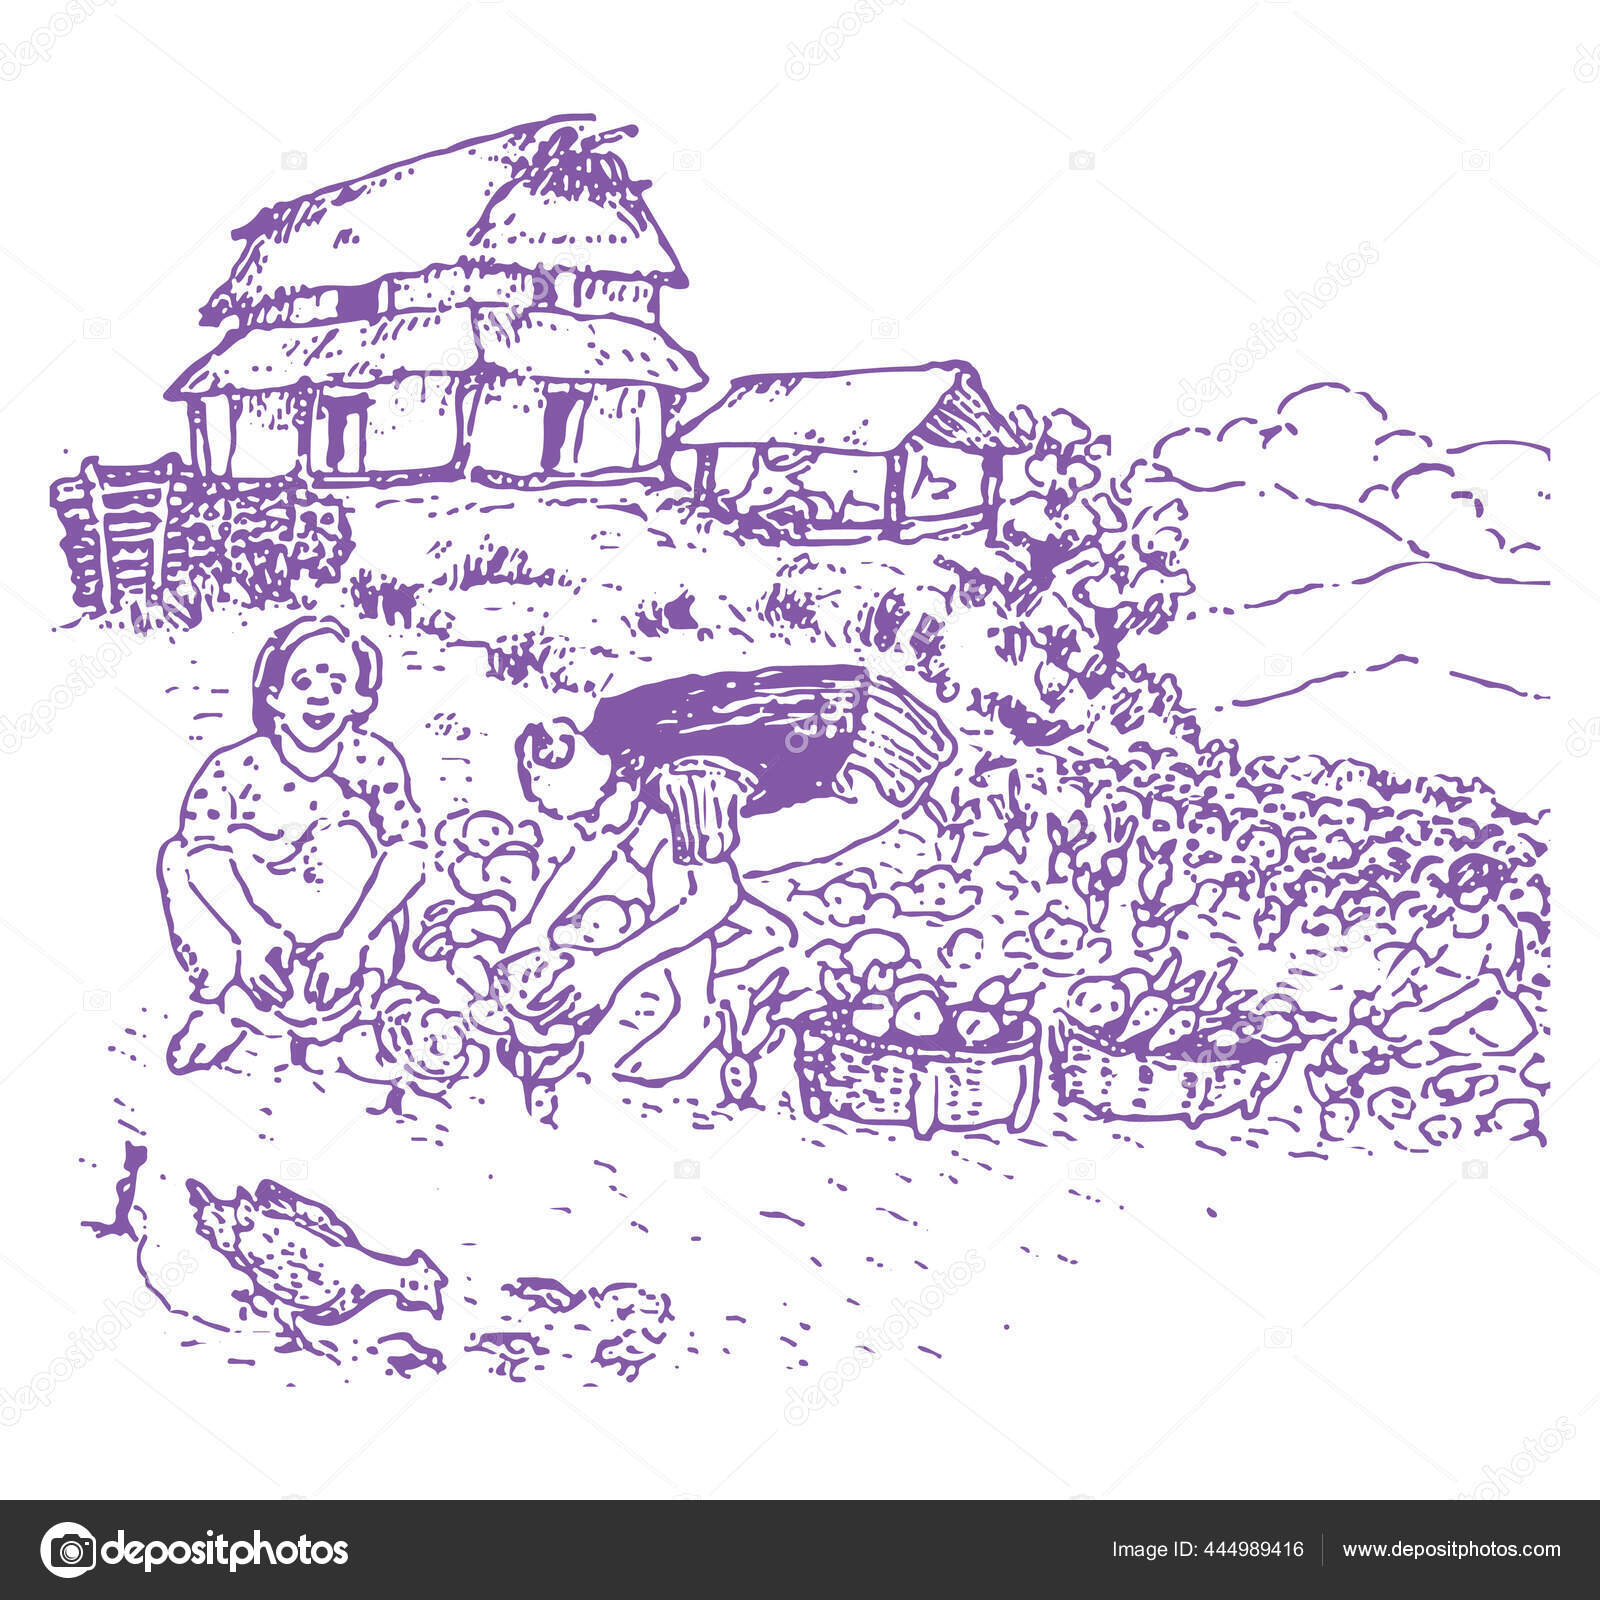 14300 Farmer Drawings Illustrations RoyaltyFree Vector Graphics  Clip  Art  iStock